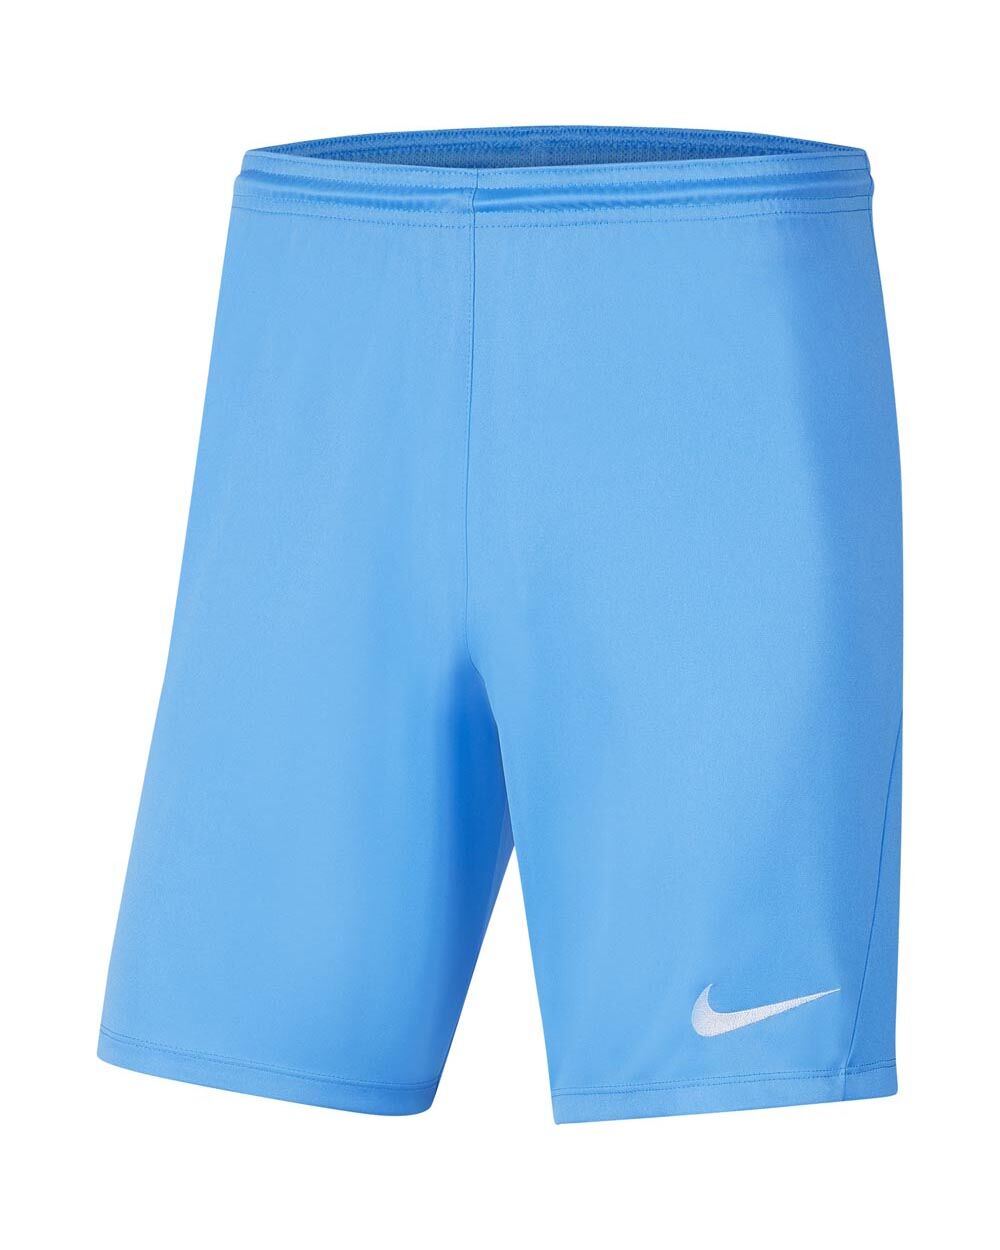 Nike Pantaloncini Park III Cielo Blu Uomo BV6855-412 L